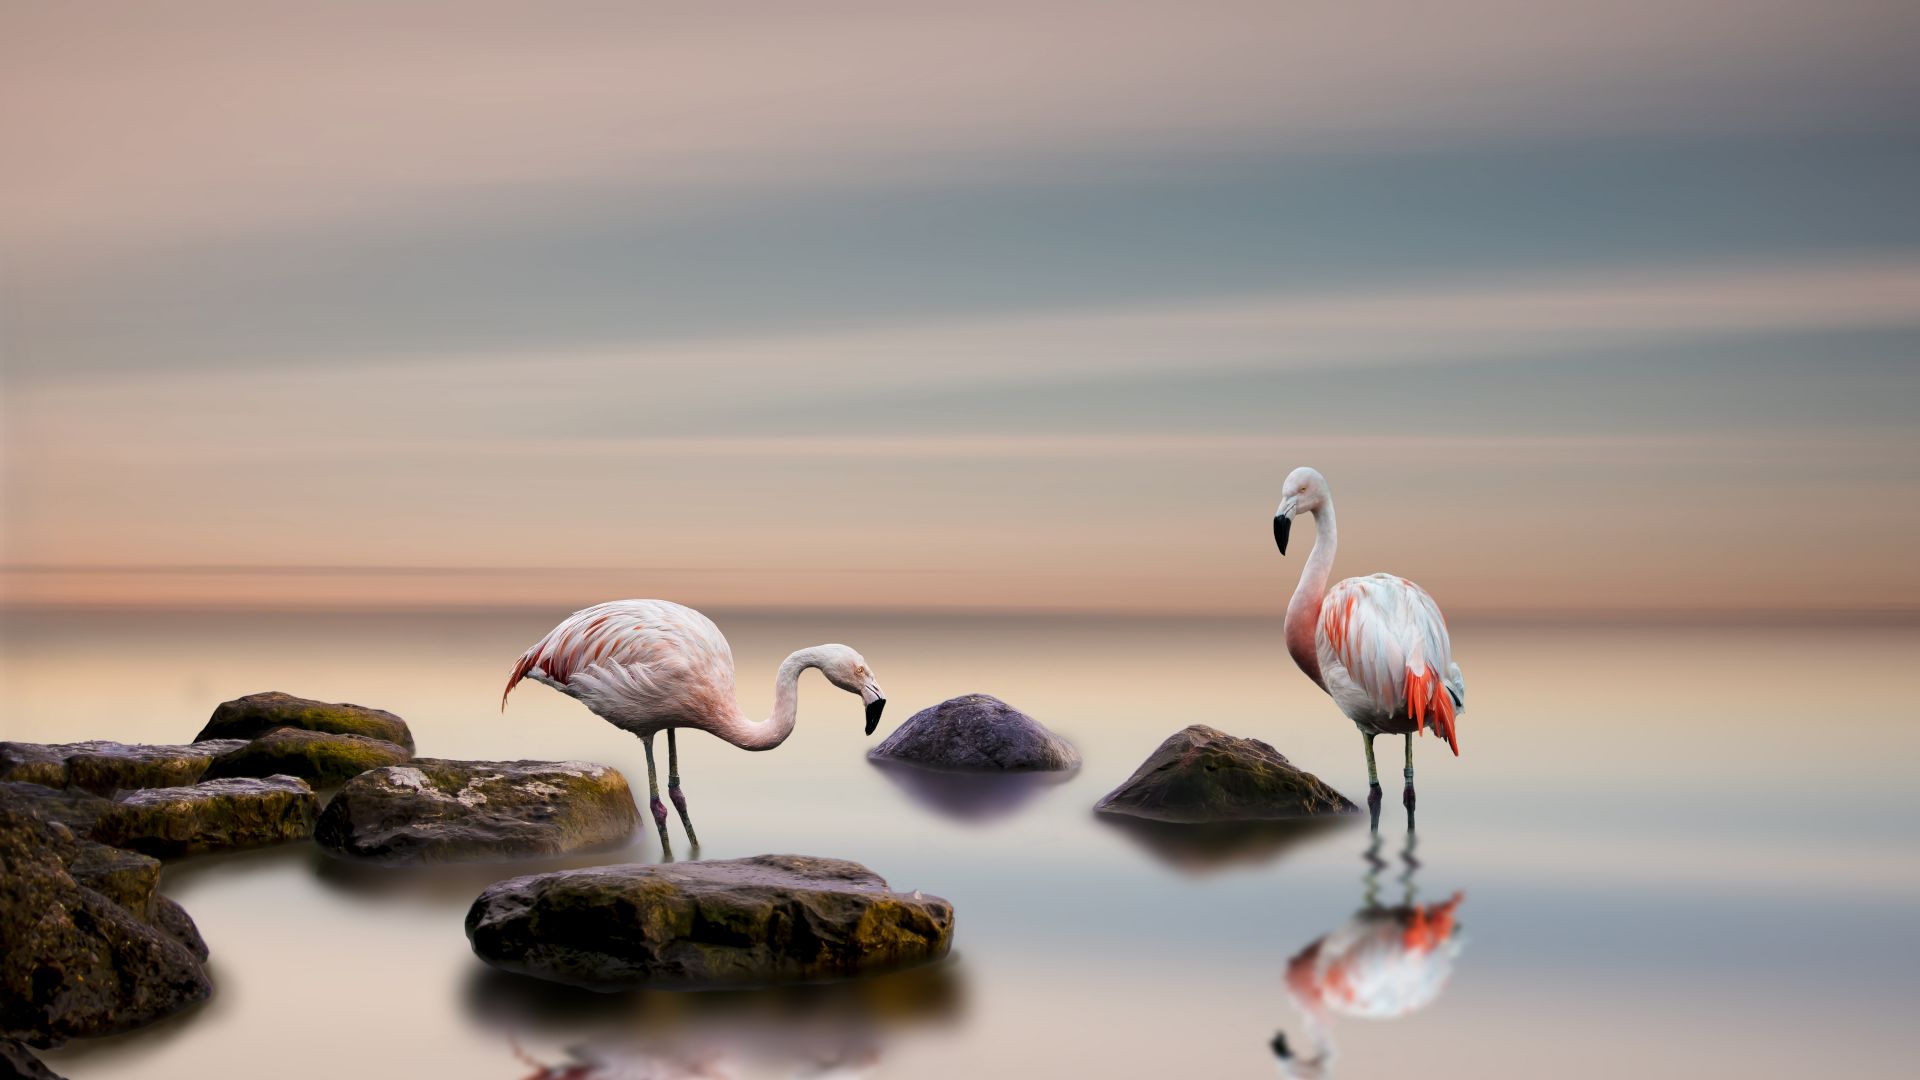 фламинго, flamingo, bird, ocean, 5k (horizontal)